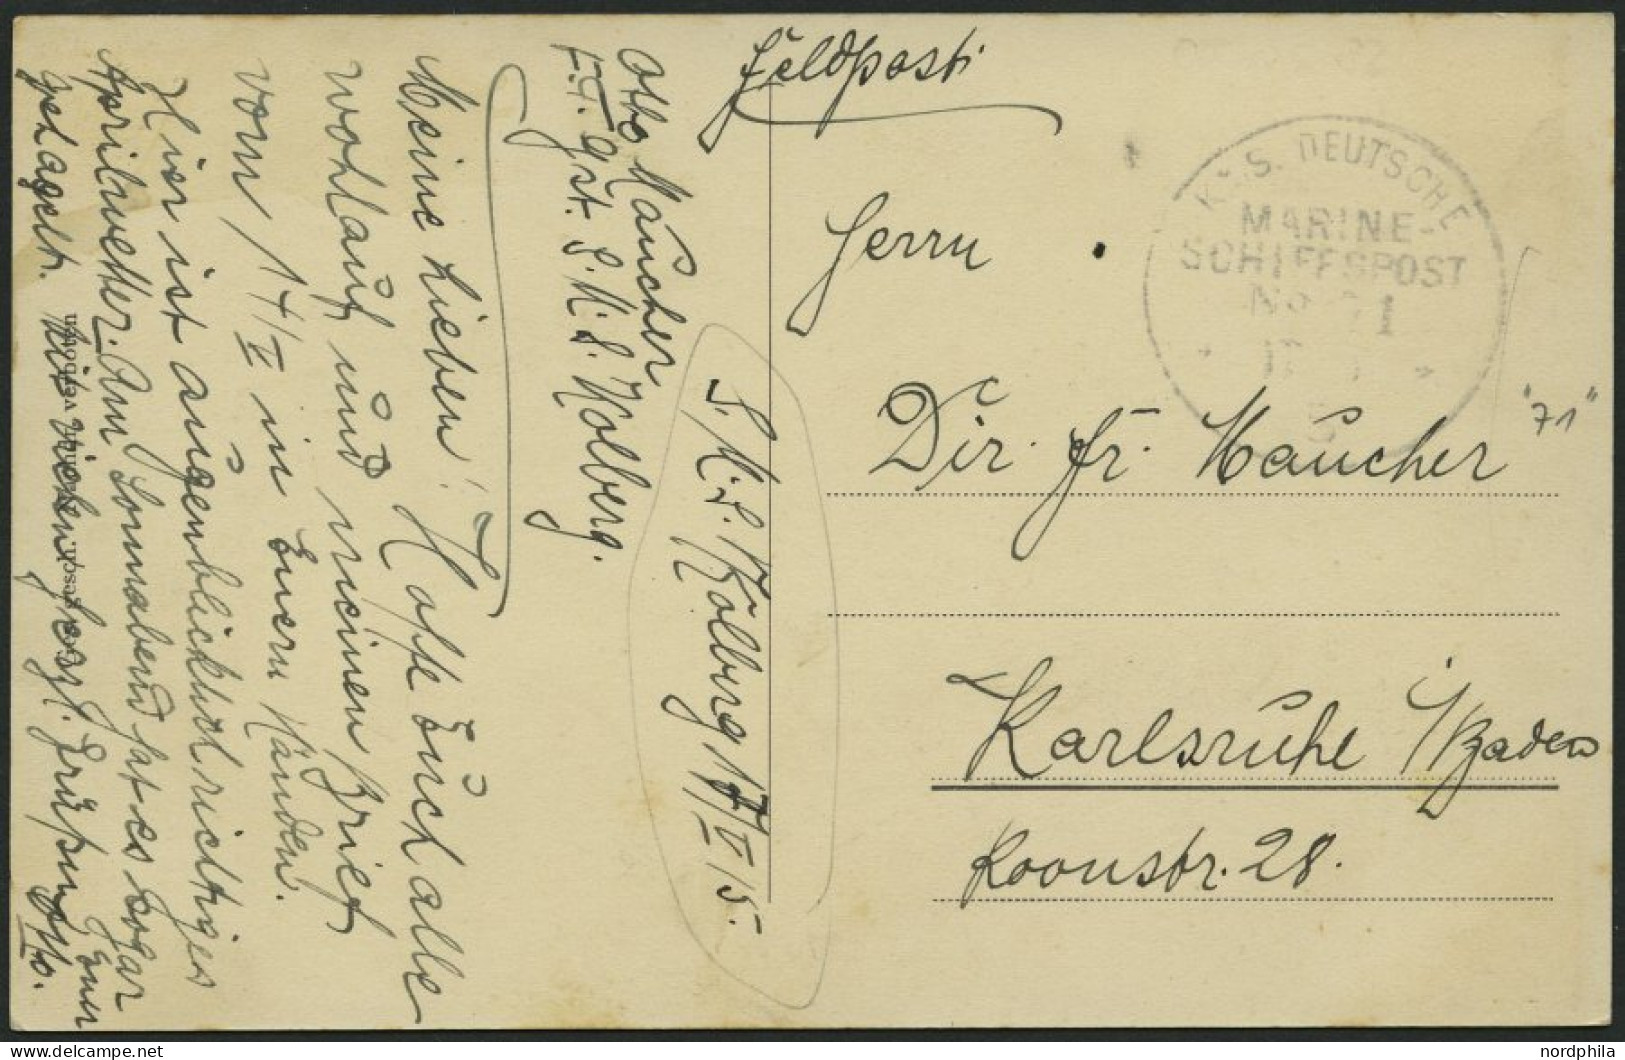 MSP VON 1914 - 1918 71 (Kleiner Kreuzer KOLBERG), 17.5.1915, Feldpost-Ansichtskarte (S.M.S. Emden) Von Bord Der Kolberg, - Maritime